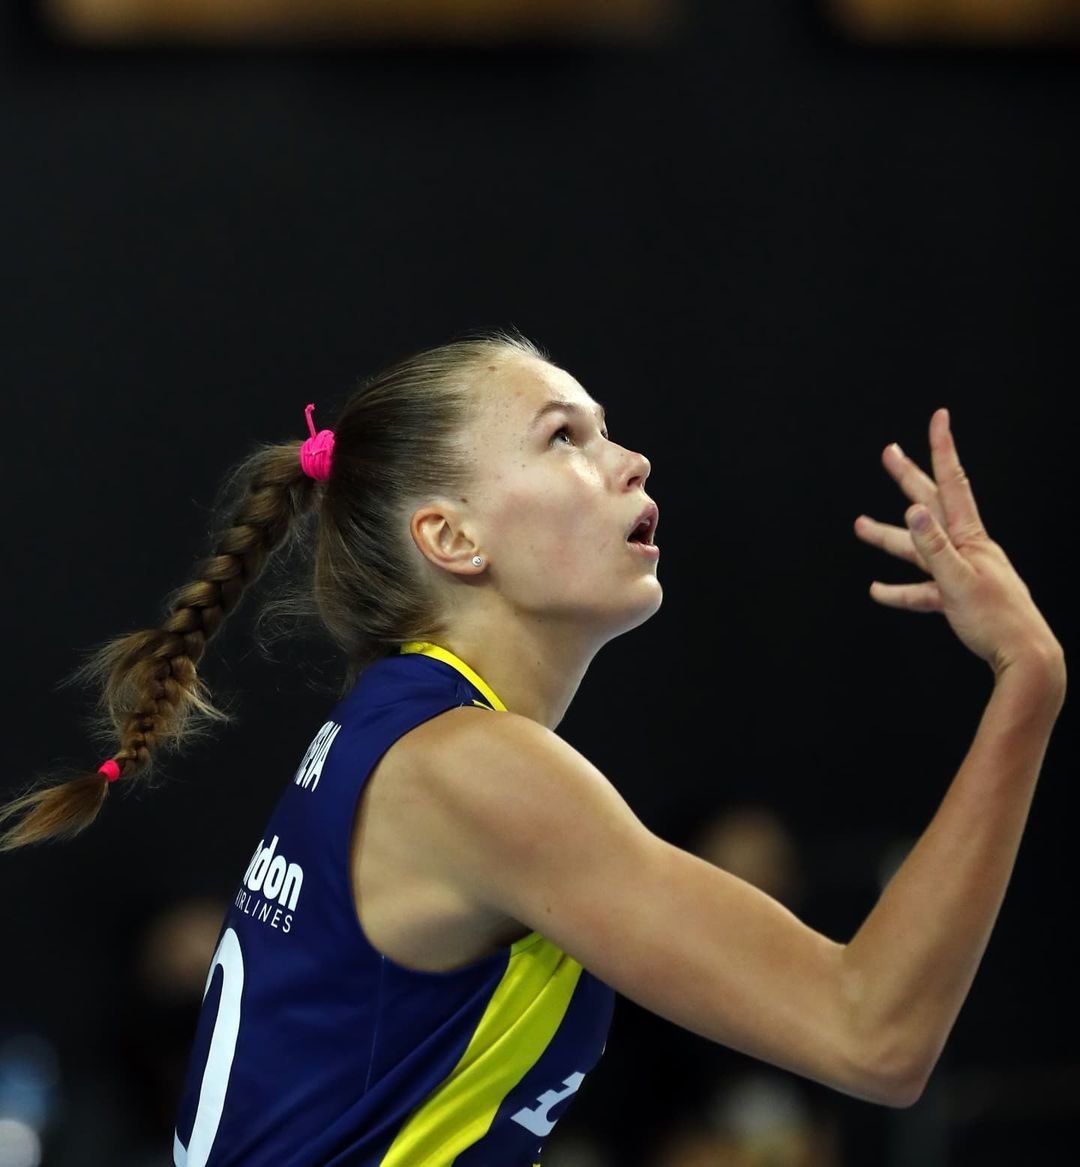 Федоровцева разрывает в Турции. В 17 лет российская волейболистка — звезда в топ-чемпионате